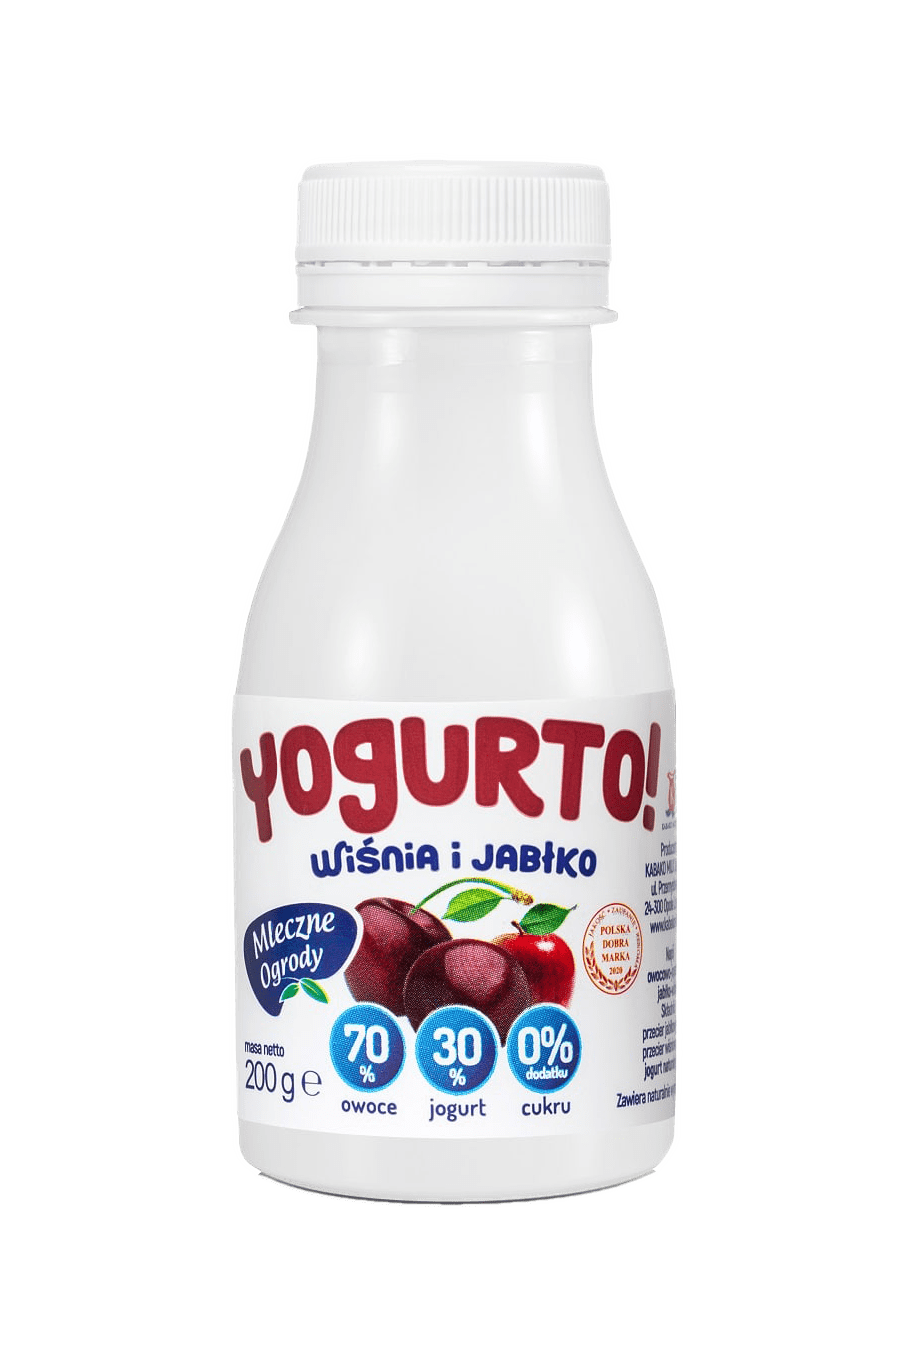  ⭐Yogurto Wiśniowo-Jabłkowe ⭐⭐ Tylko dwa składniki ⭐⭐ Jogurt 30% i Owoce 70% by Mleczne Ogrody